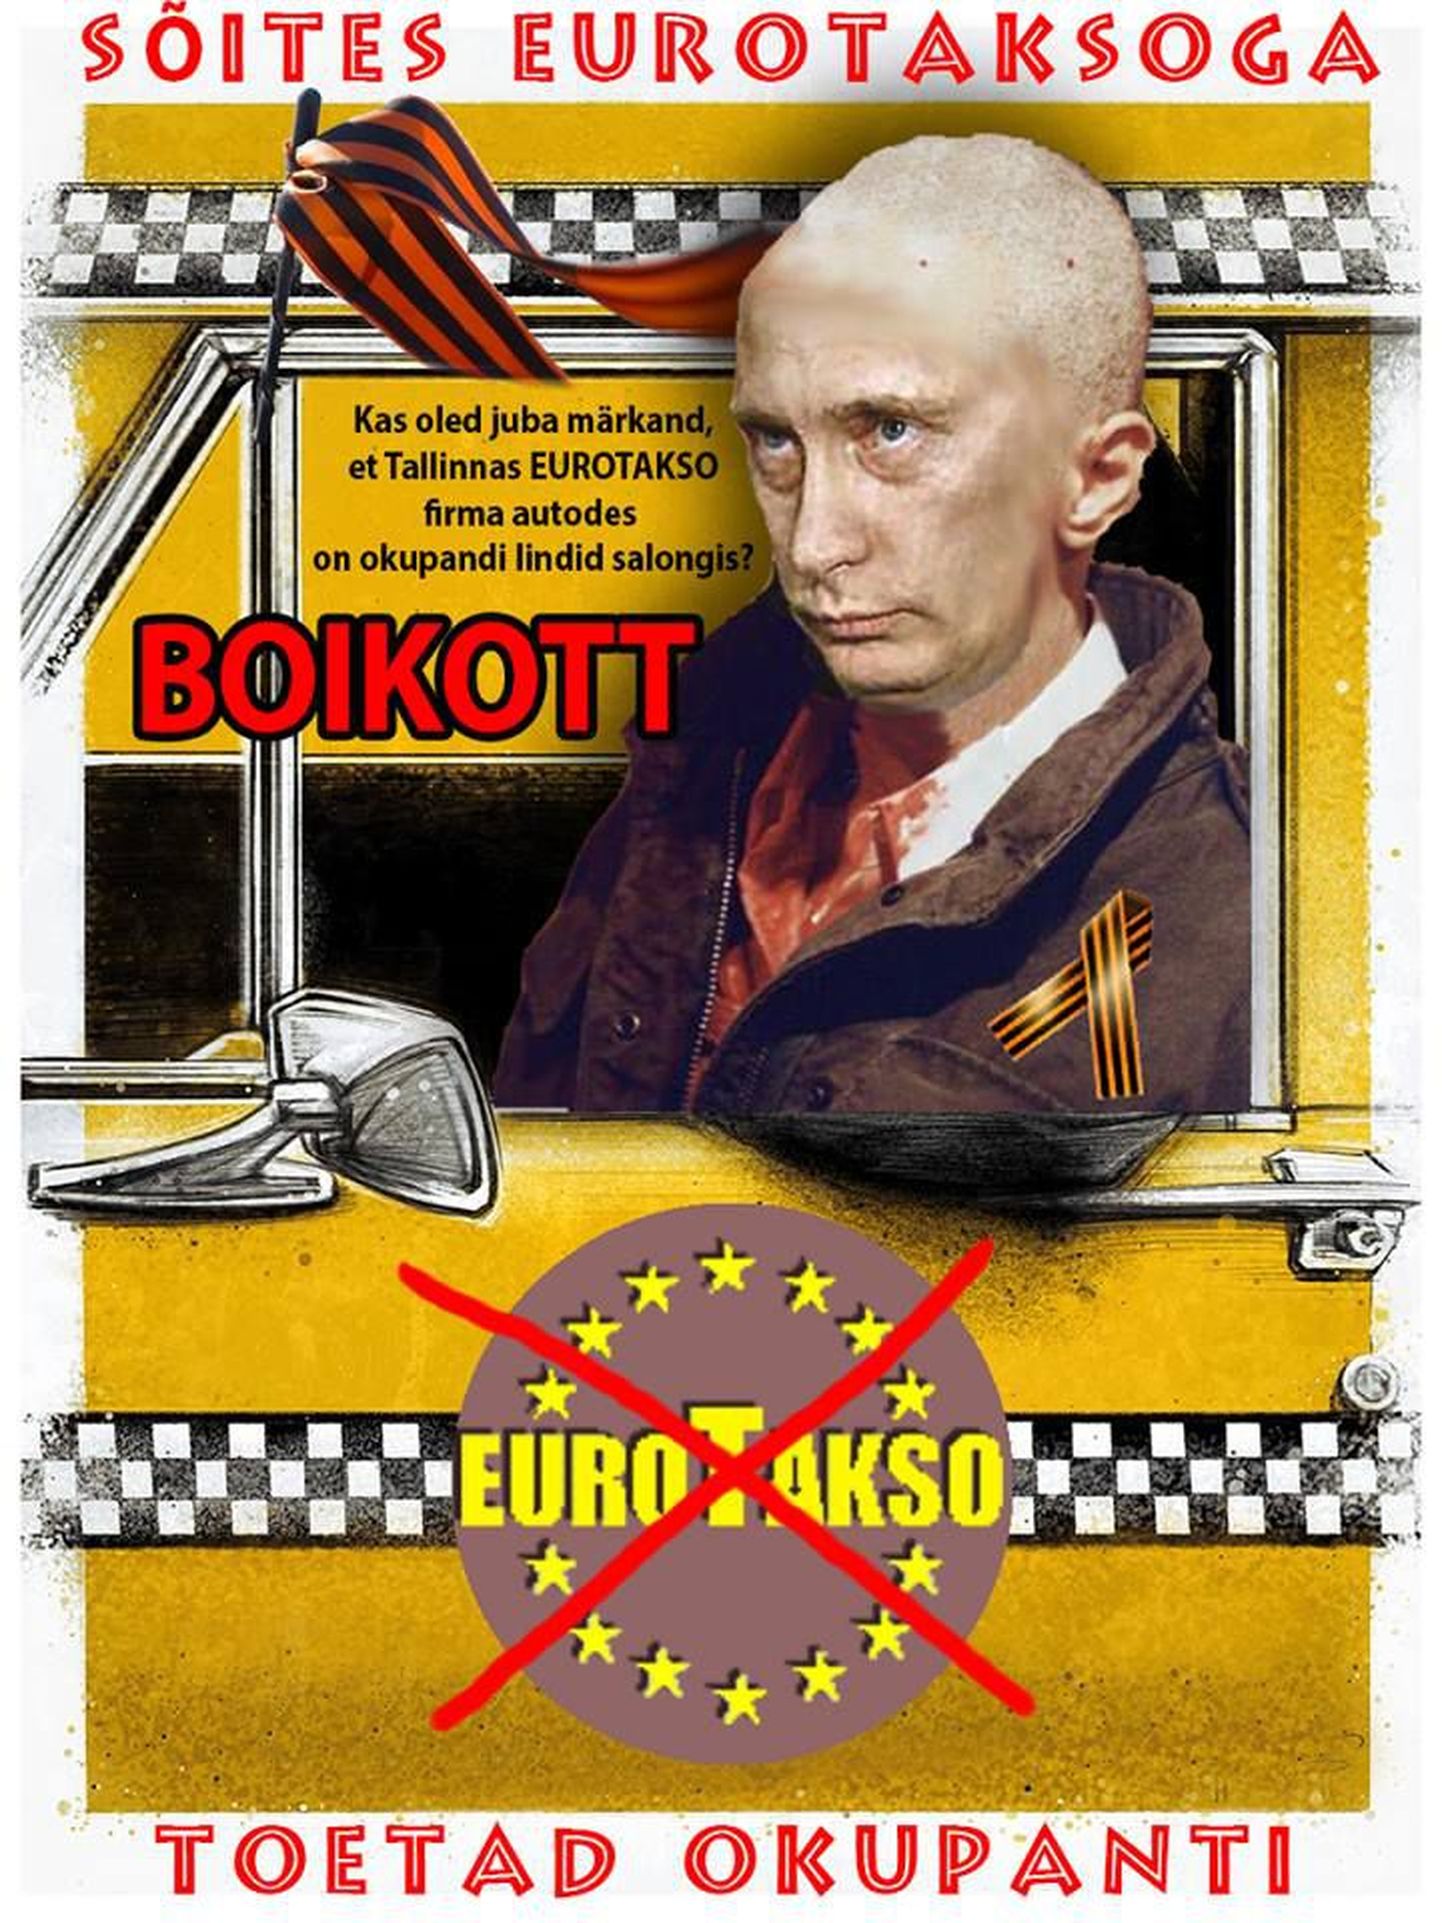 Плакат, призывающий бойкотировать услуги таксофирмы Eurotakso.